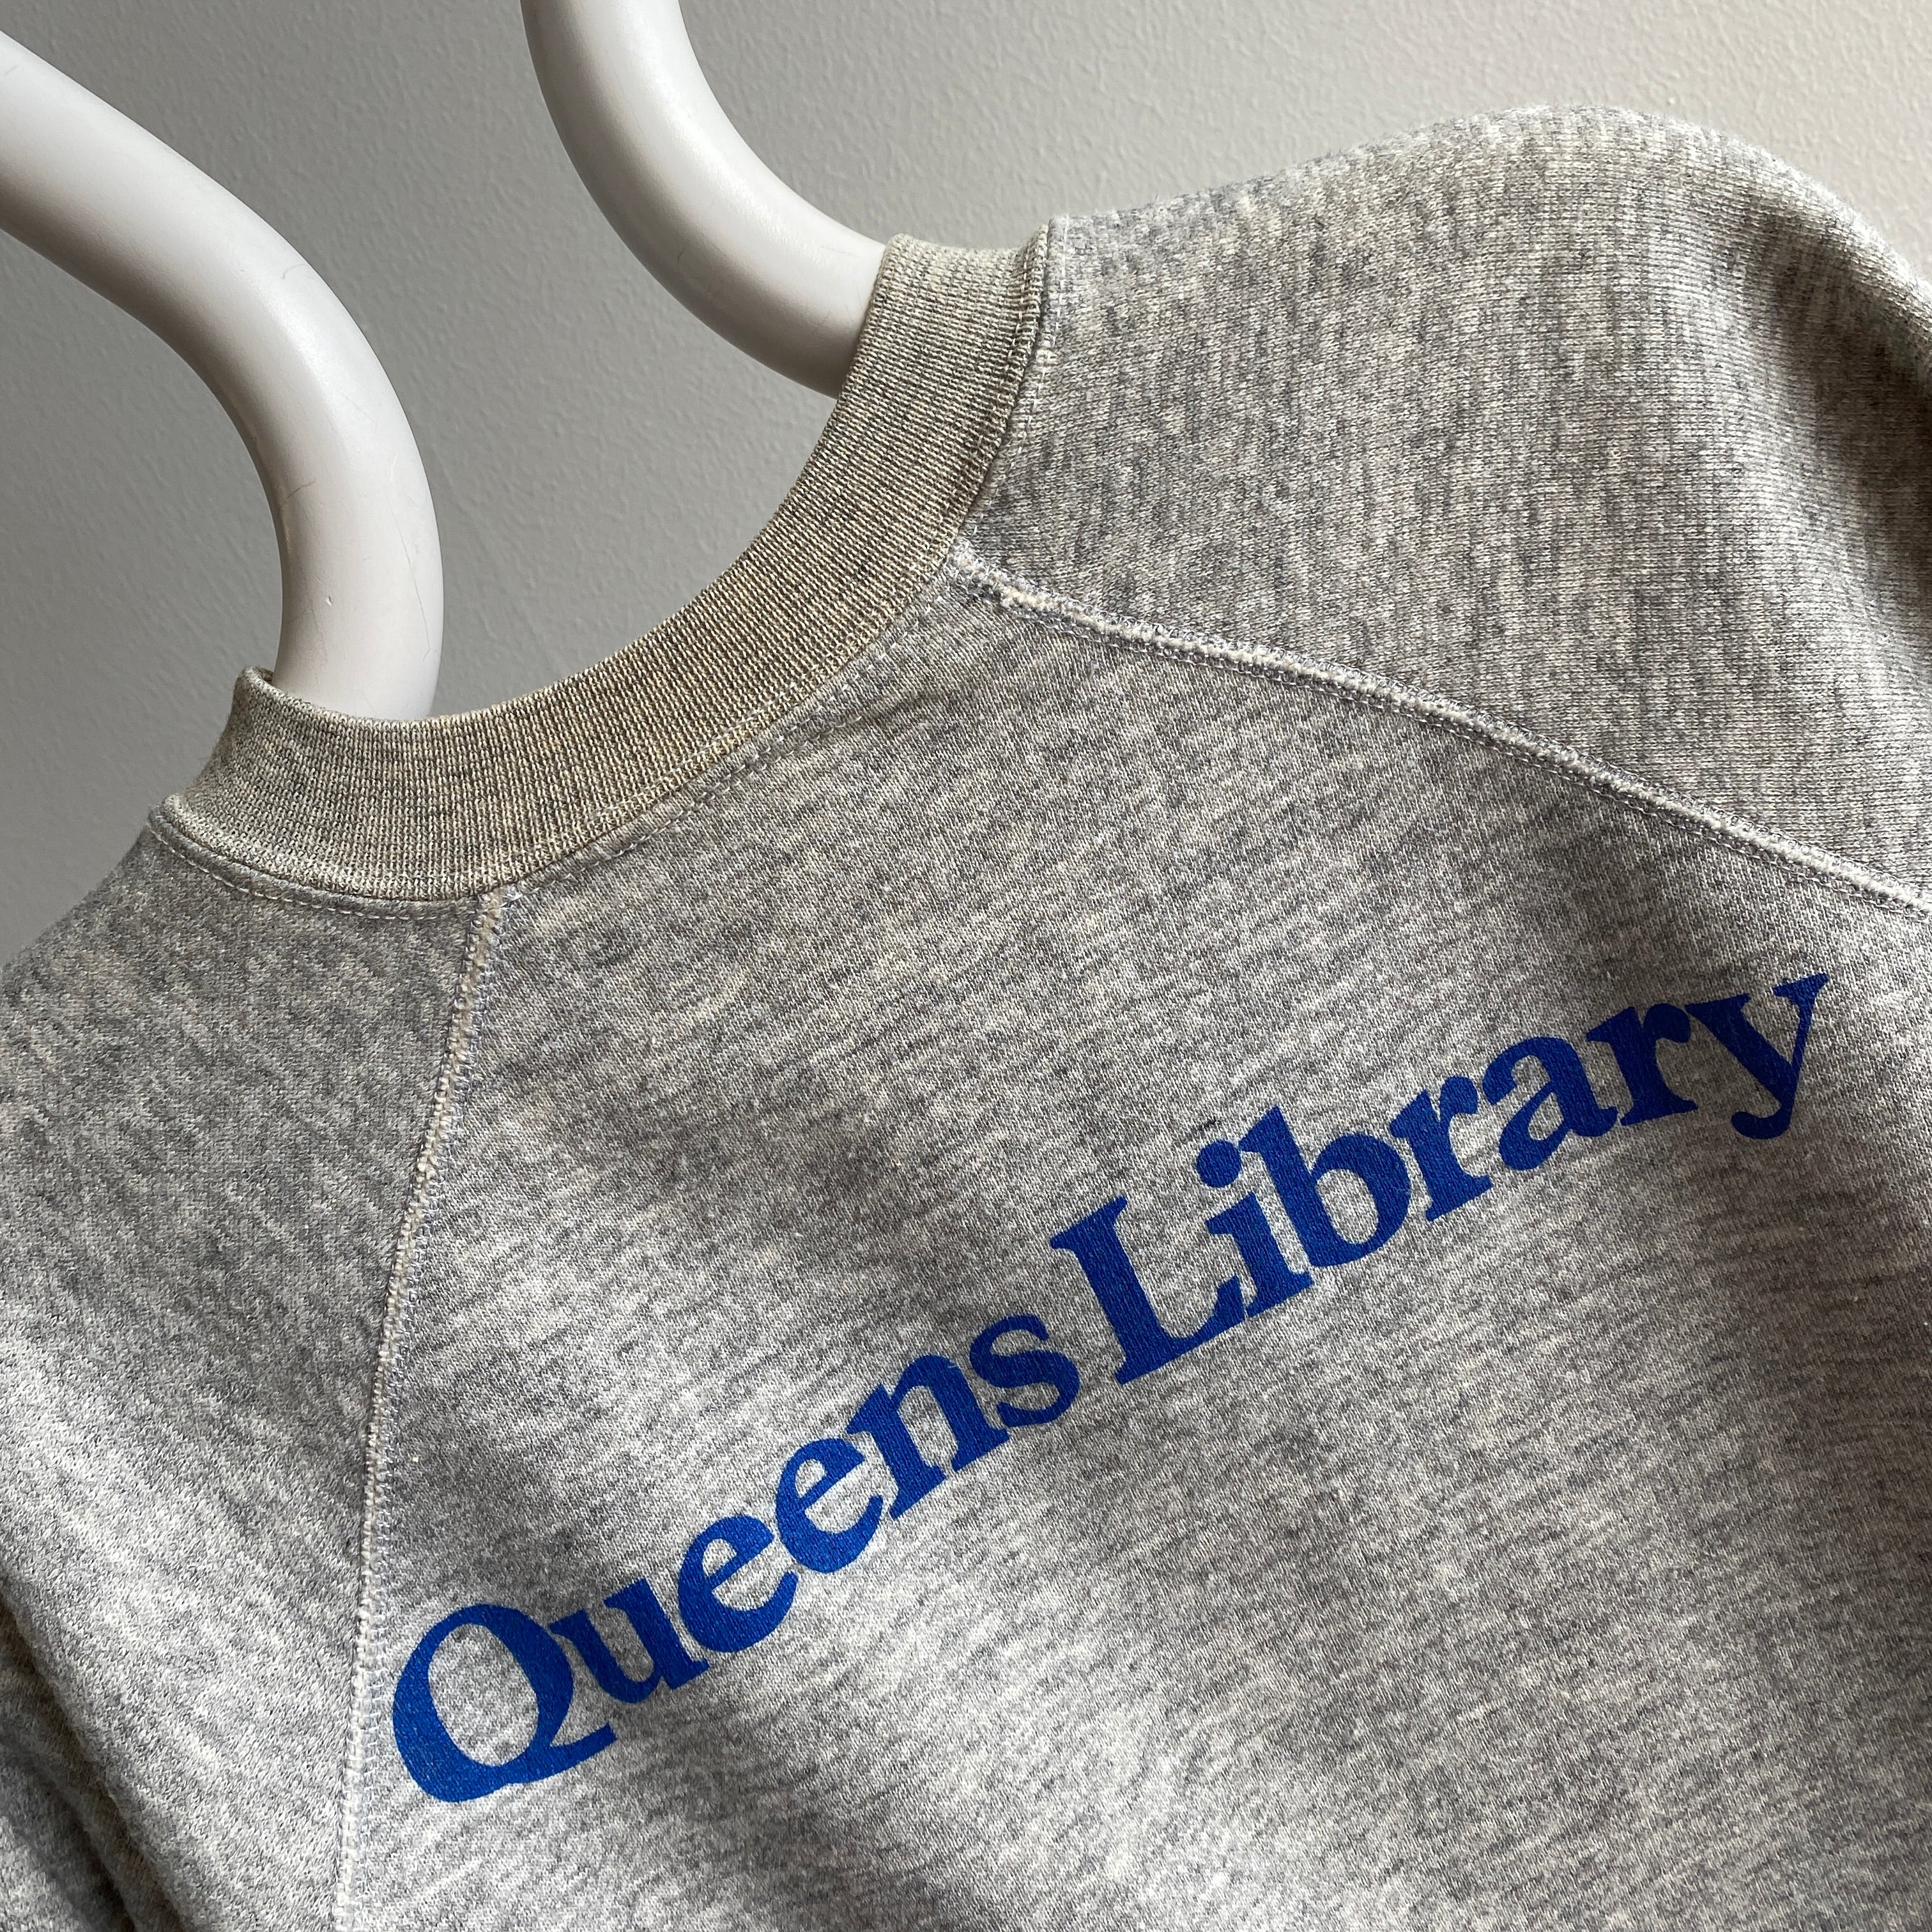 1970s Queens Library Sweatshirt